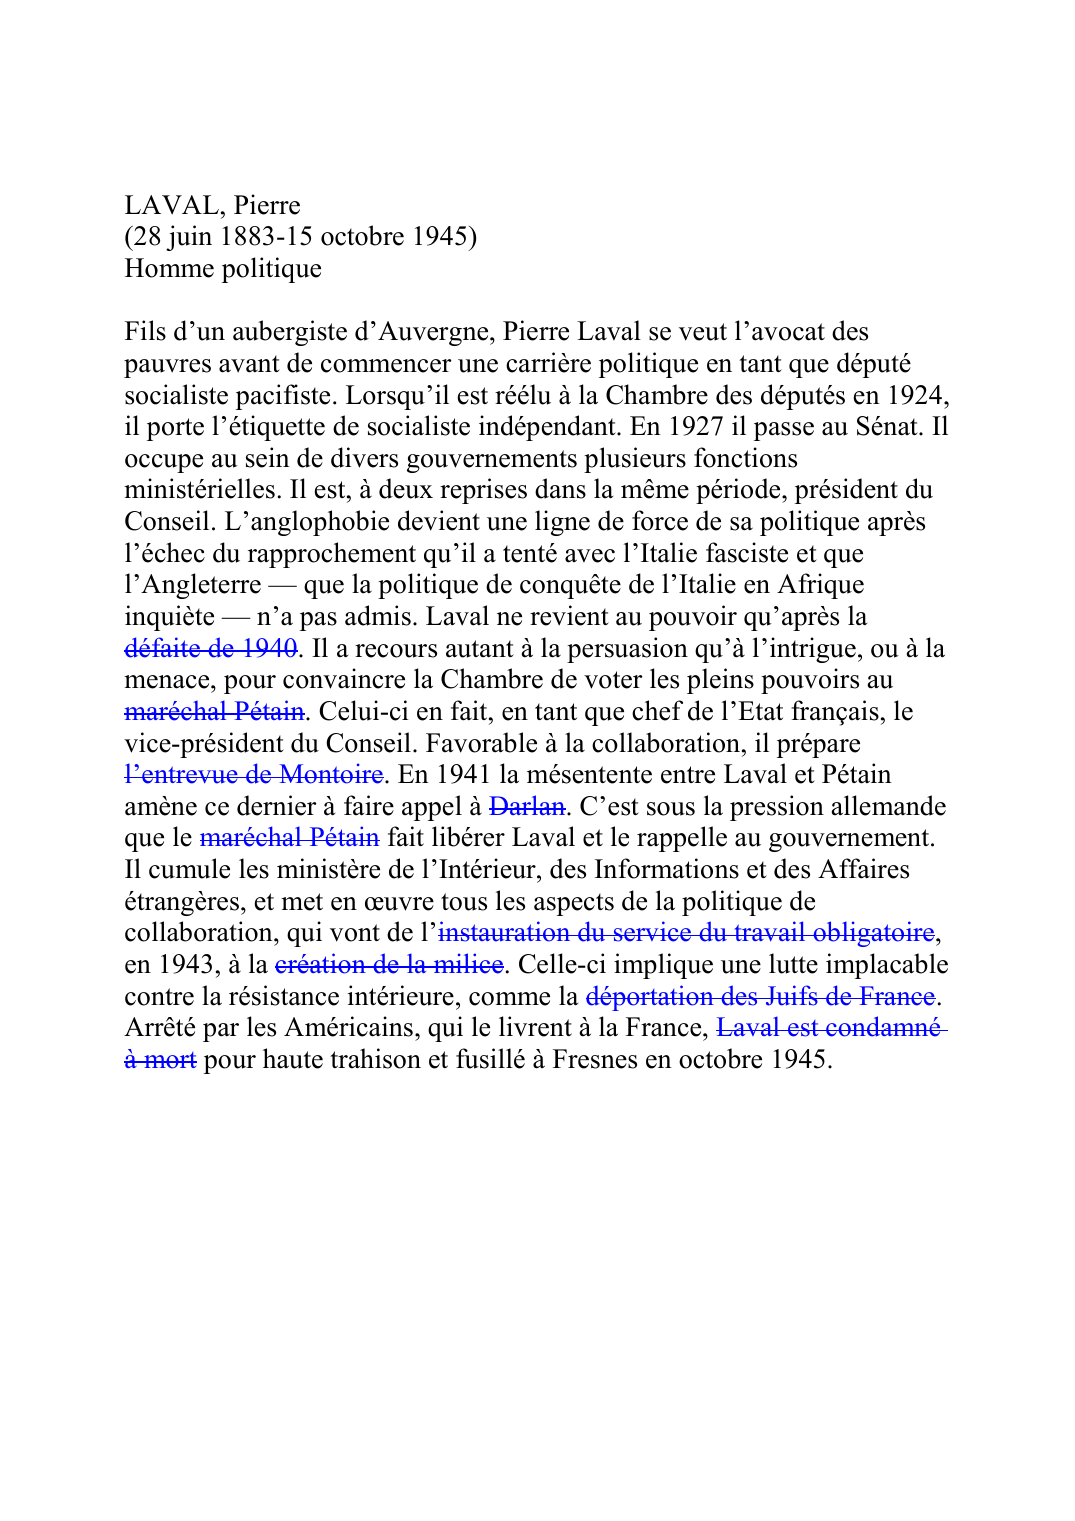 Prévisualisation du document LAVAL, Pierre (28 juin 1883-15 octobre 1945) Homme politique  Fils d'un aubergiste d'Auvergne, Pierre Laval se veut l'avocat des pauvres avant de commencer une carrière politique en tant que député socialiste pacifiste.